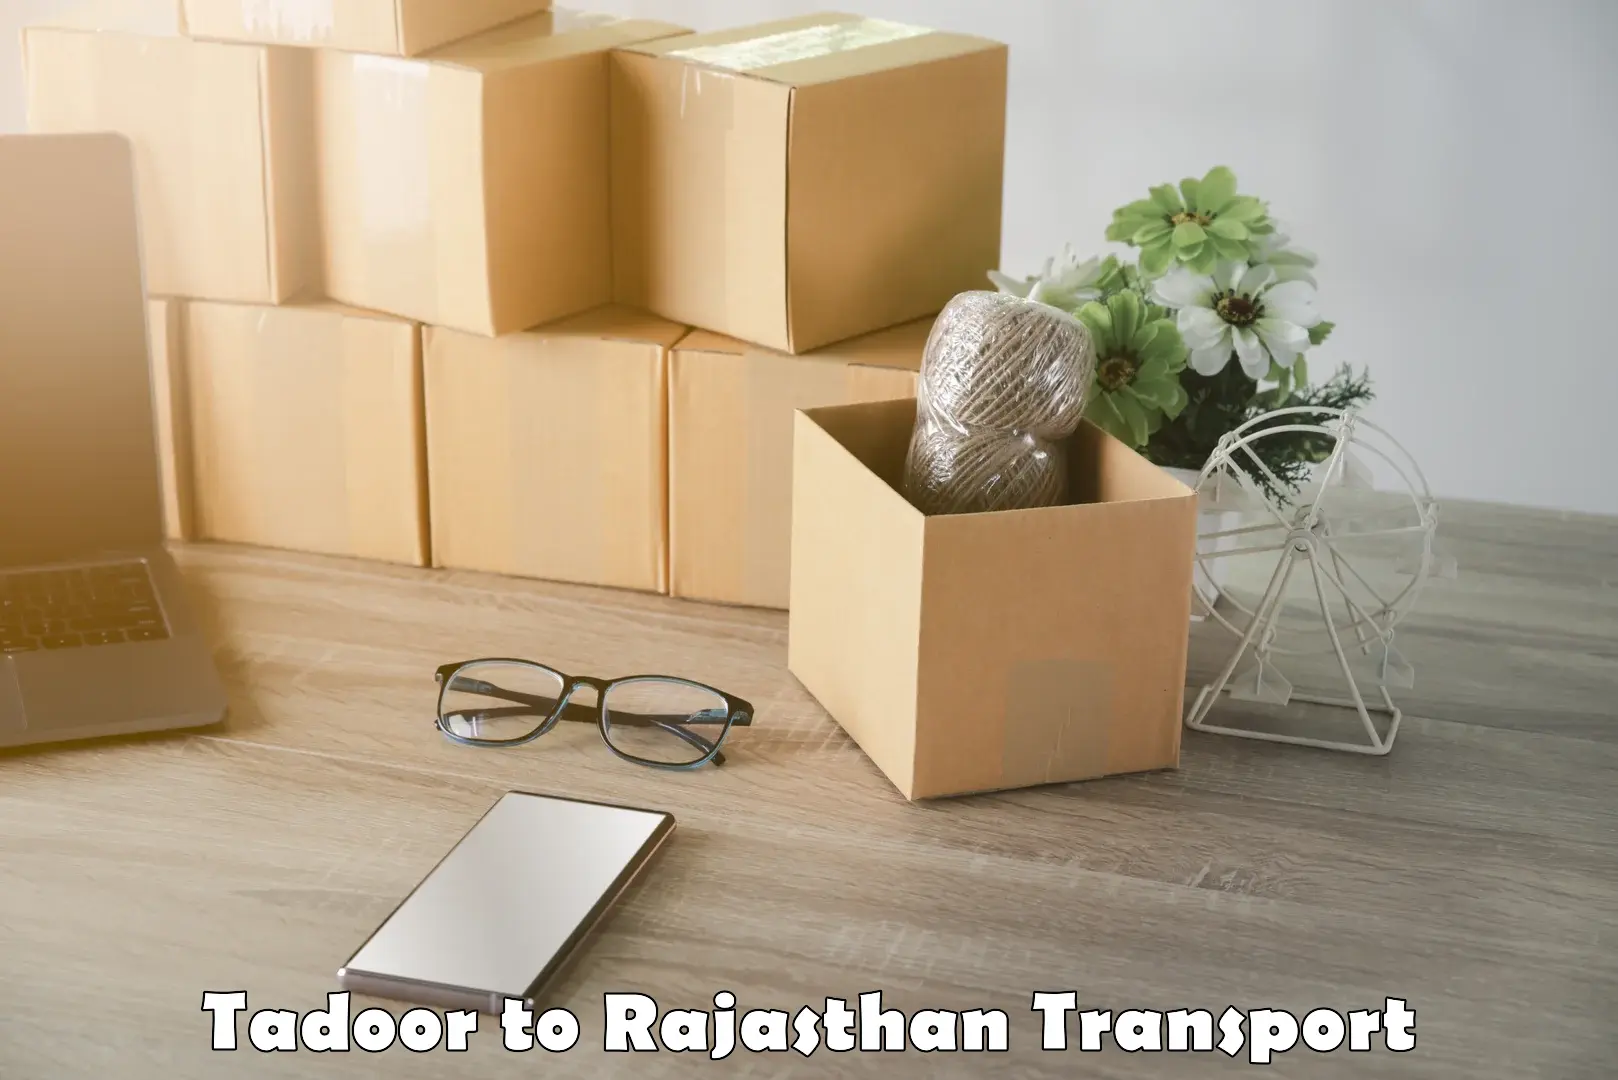 Container transport service Tadoor to Bikaner